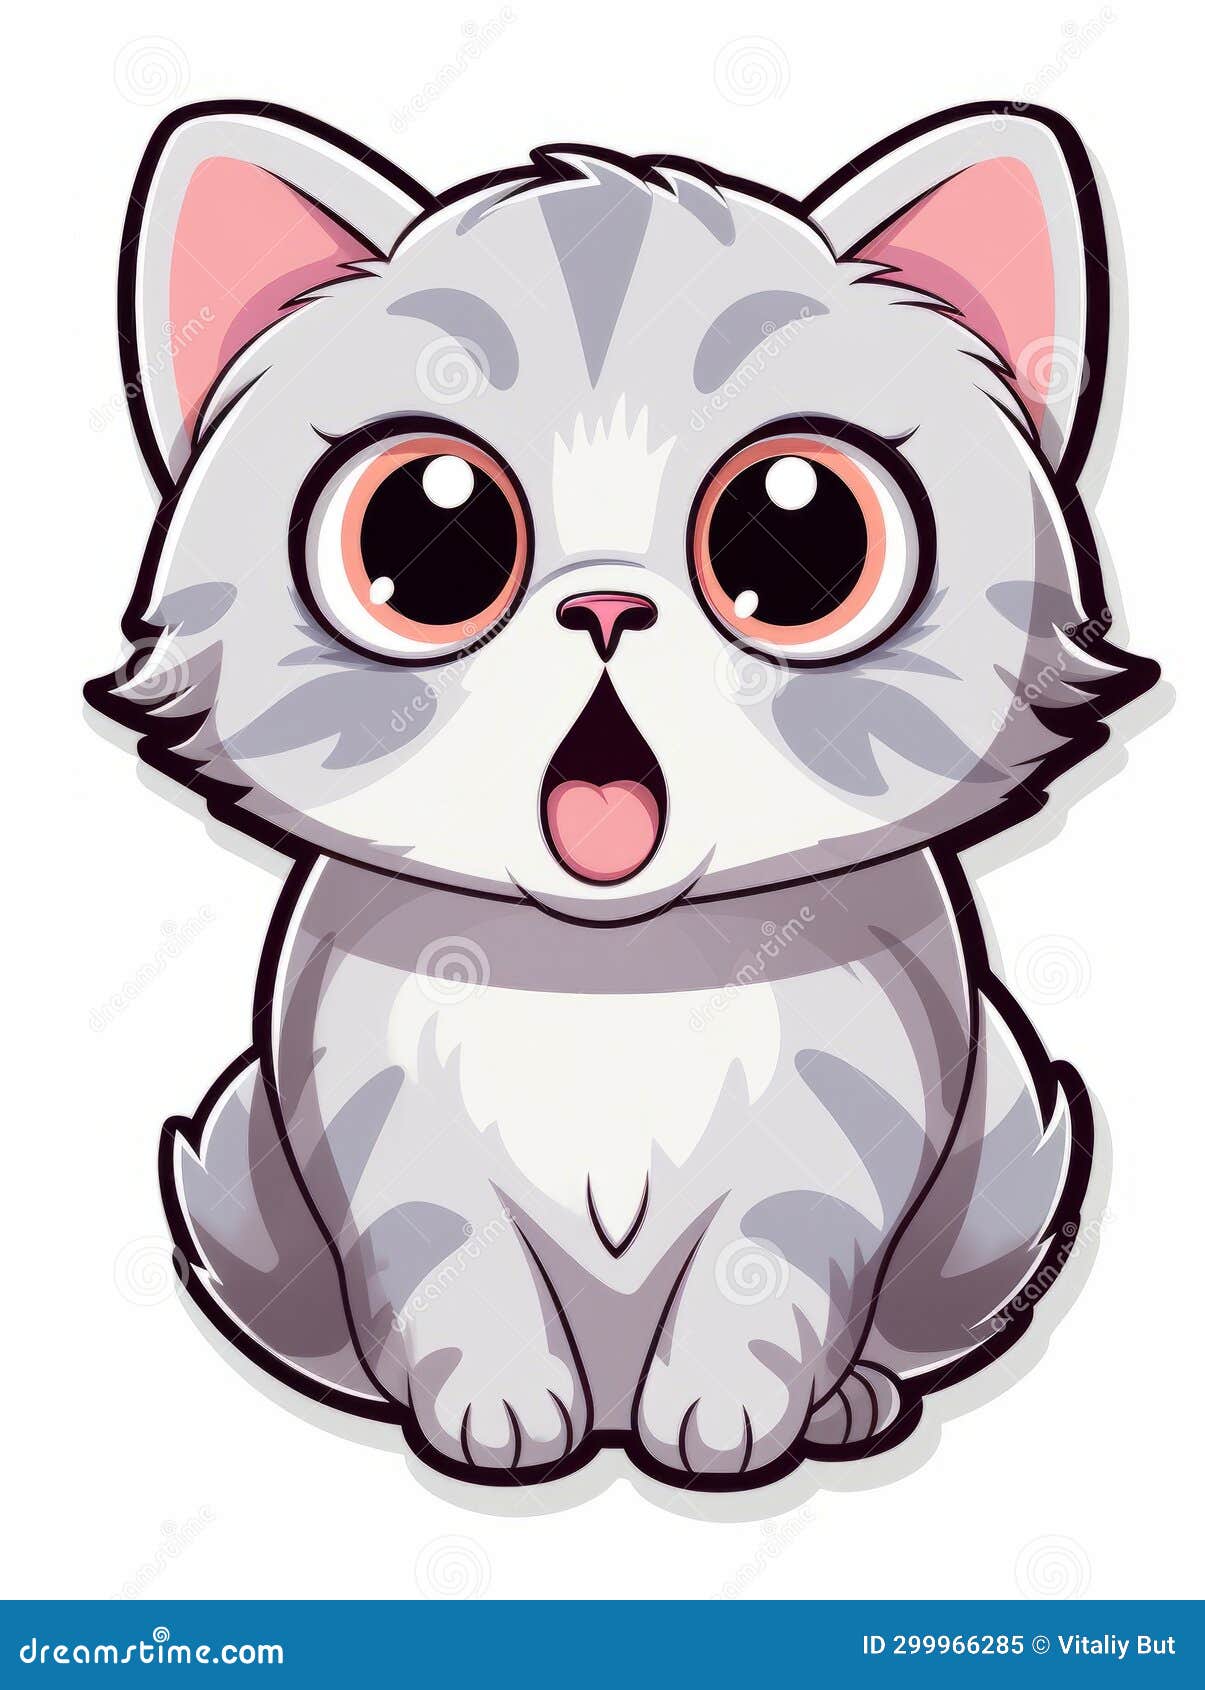 Cartoon Sticker Surprised Kitten on White Background Isolated, AI Stock ...